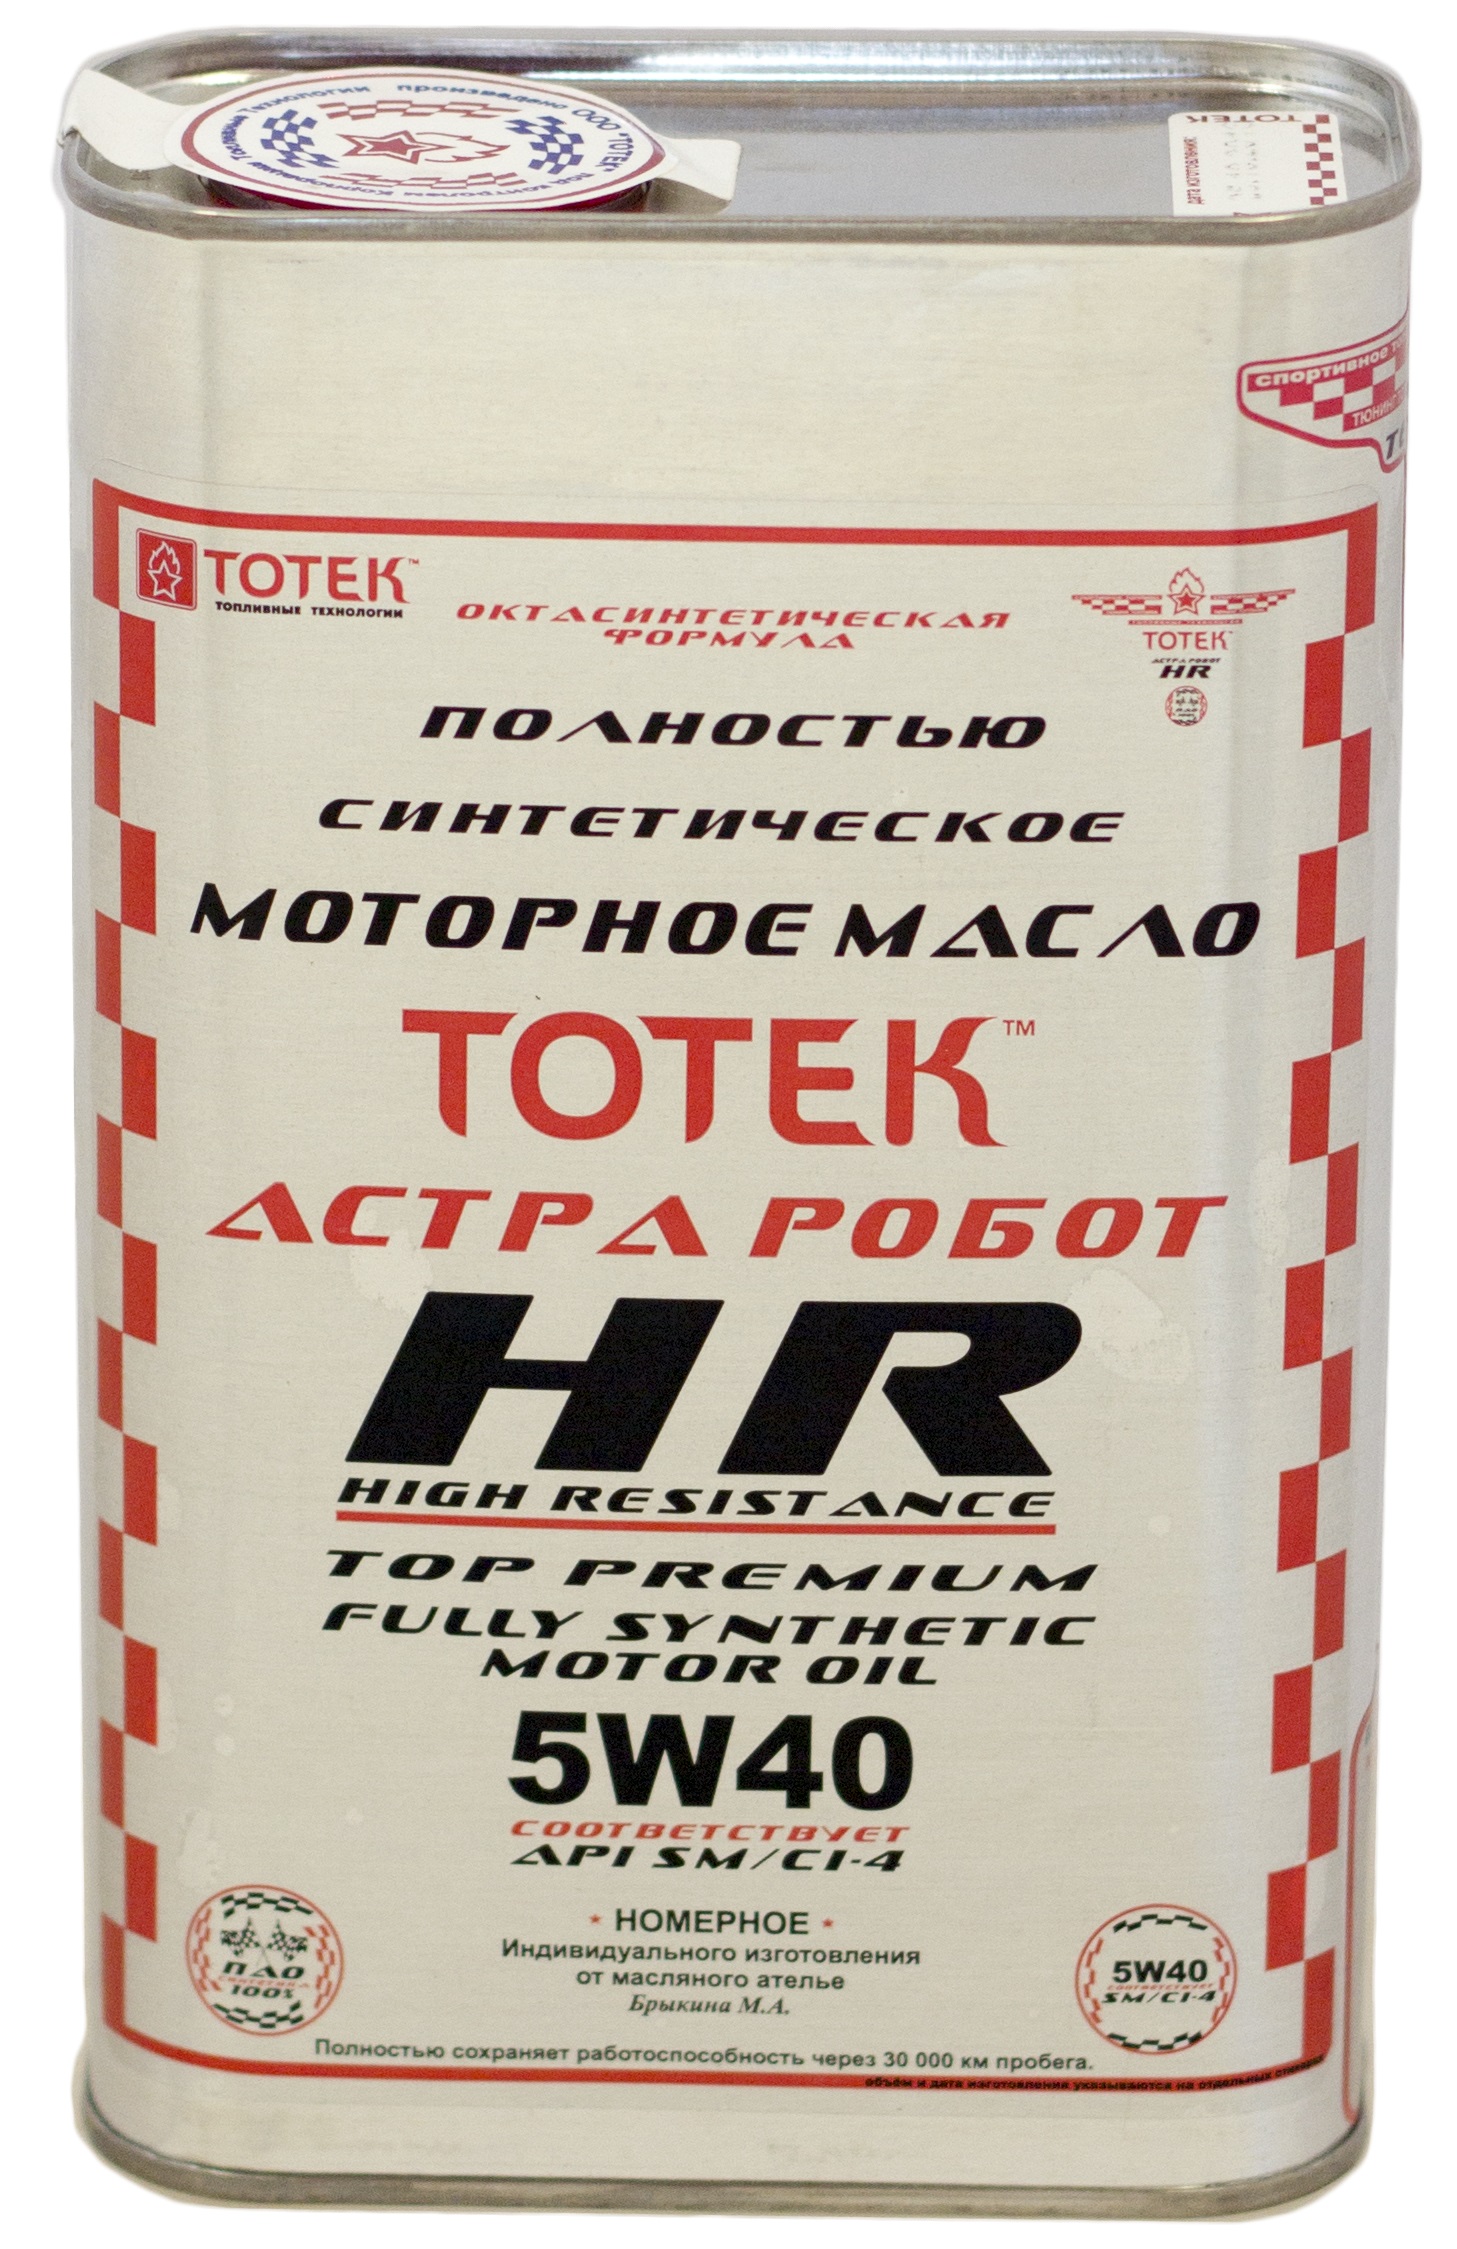 Моторное масло Тотек Астра Робот HR 5W40 1 л